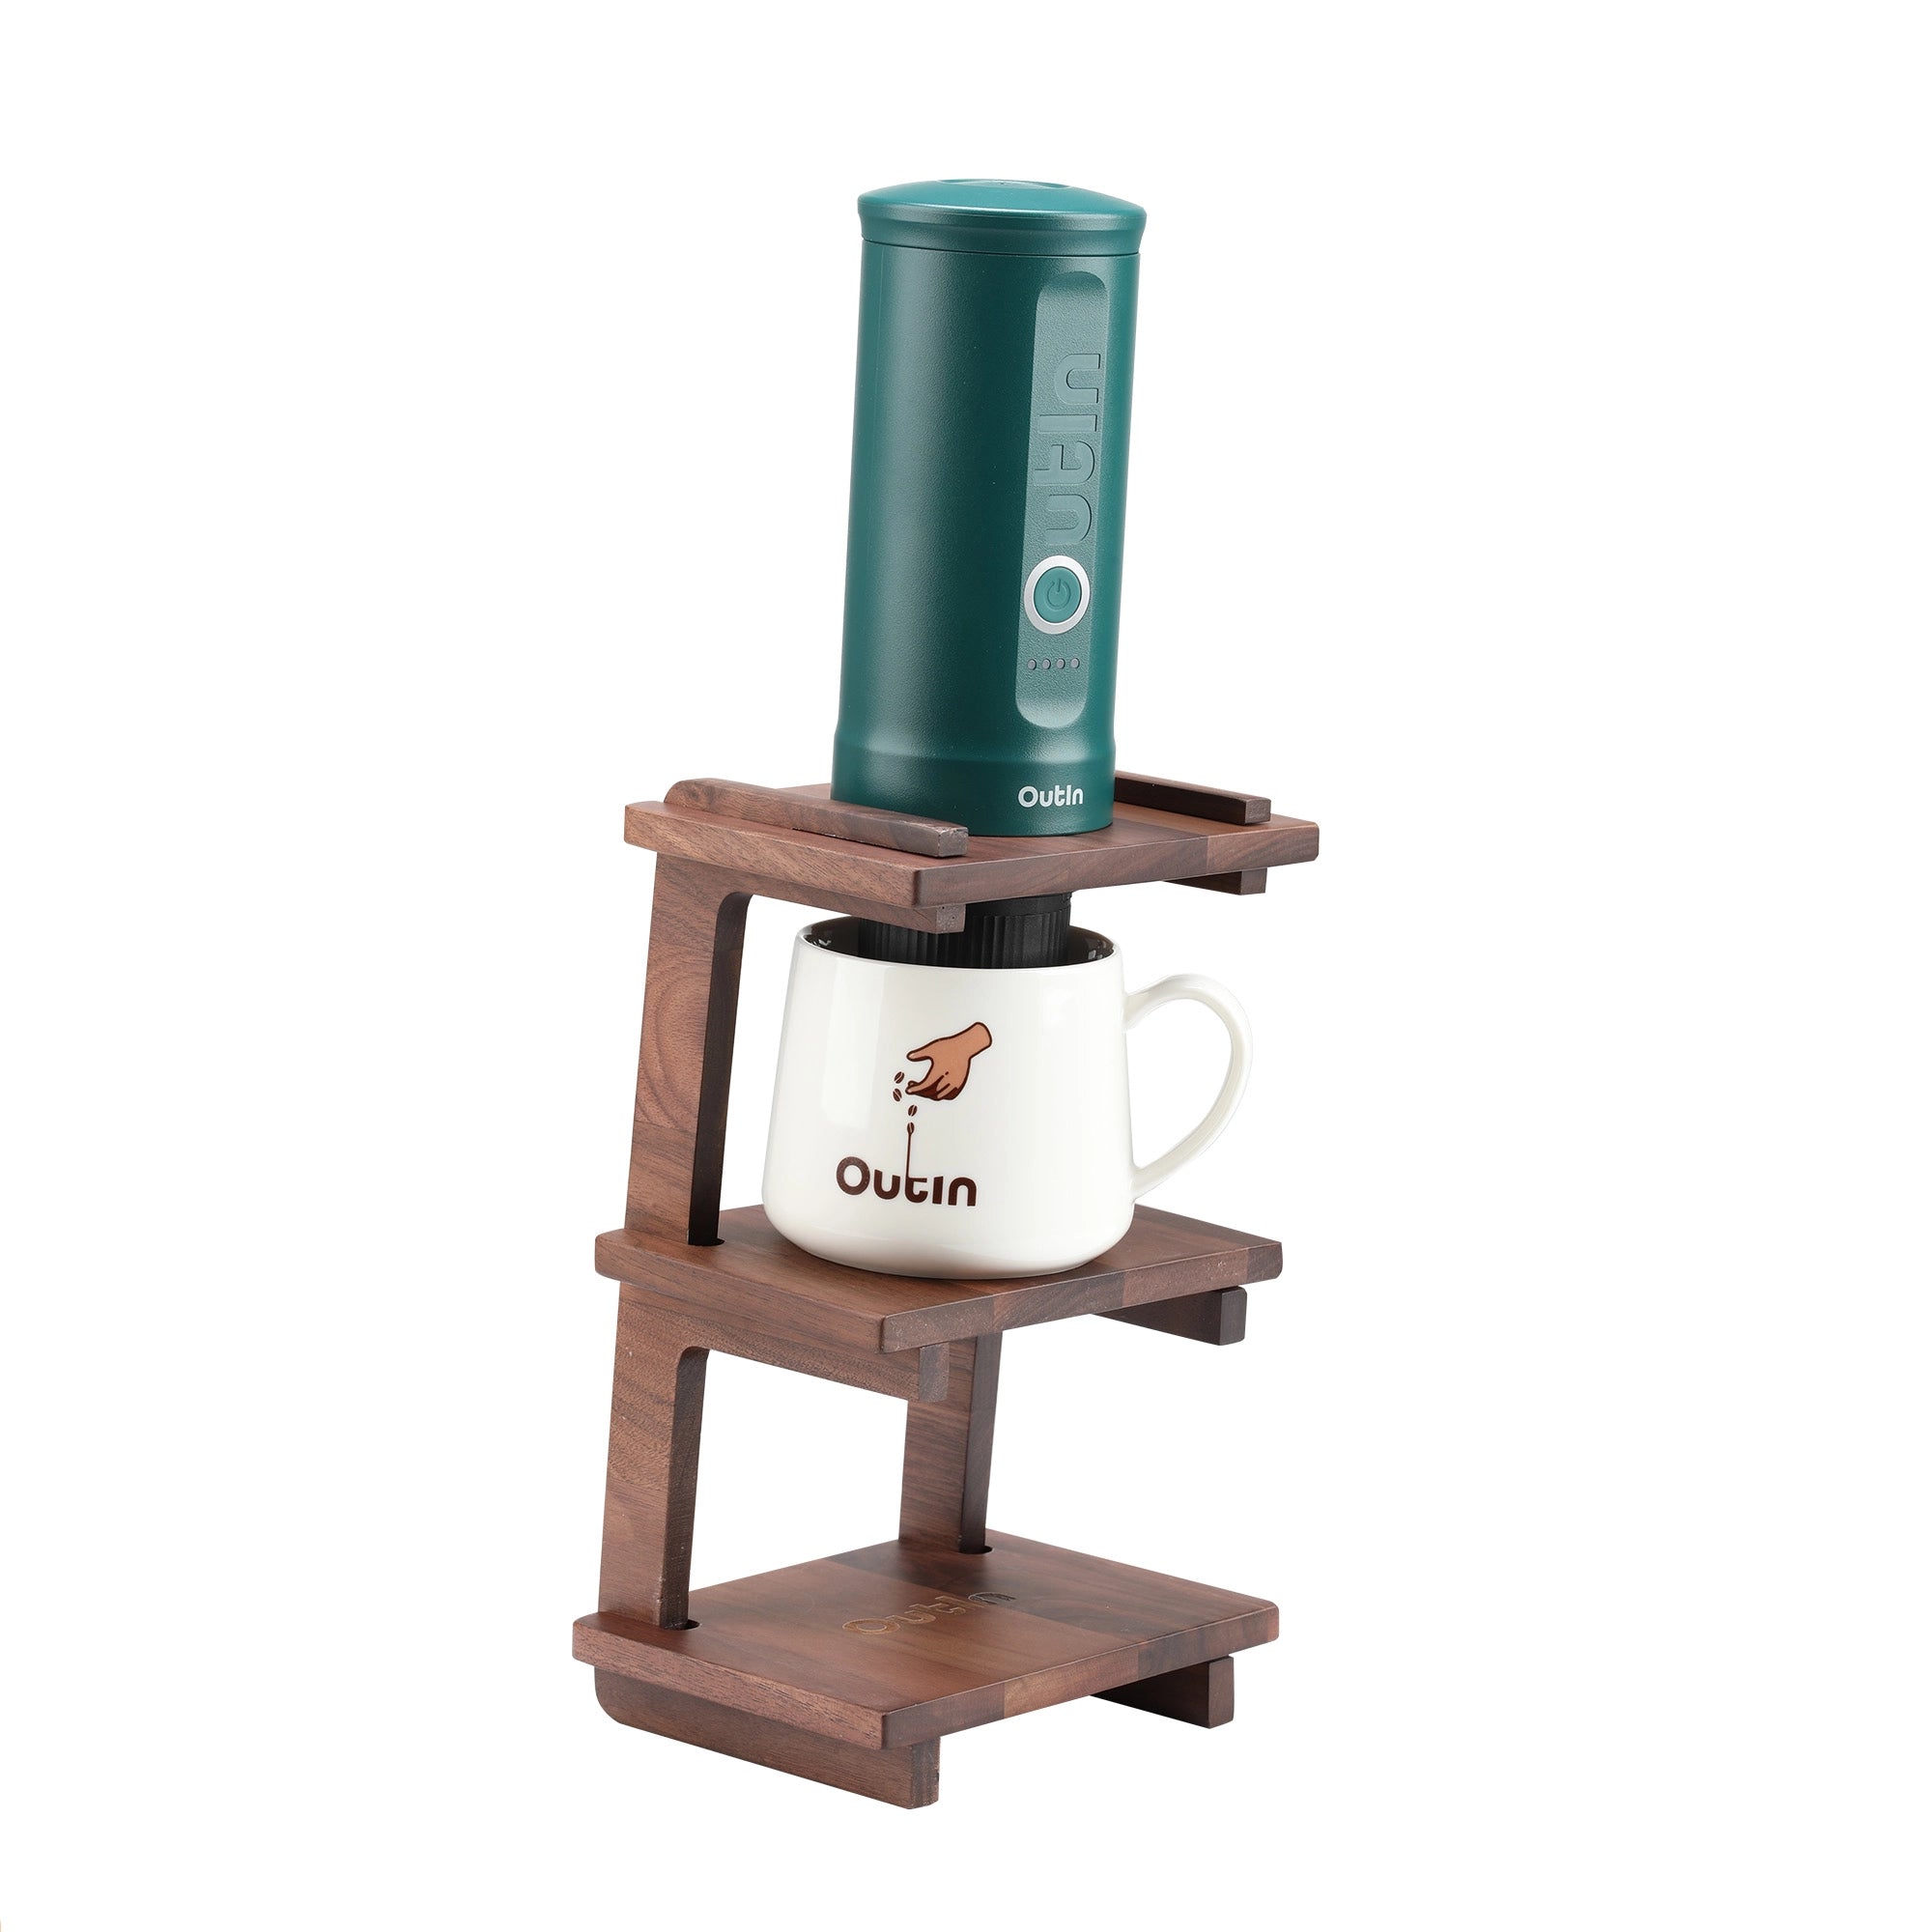 OutIn Nano Portable Espresso Coffee Machine User Guide